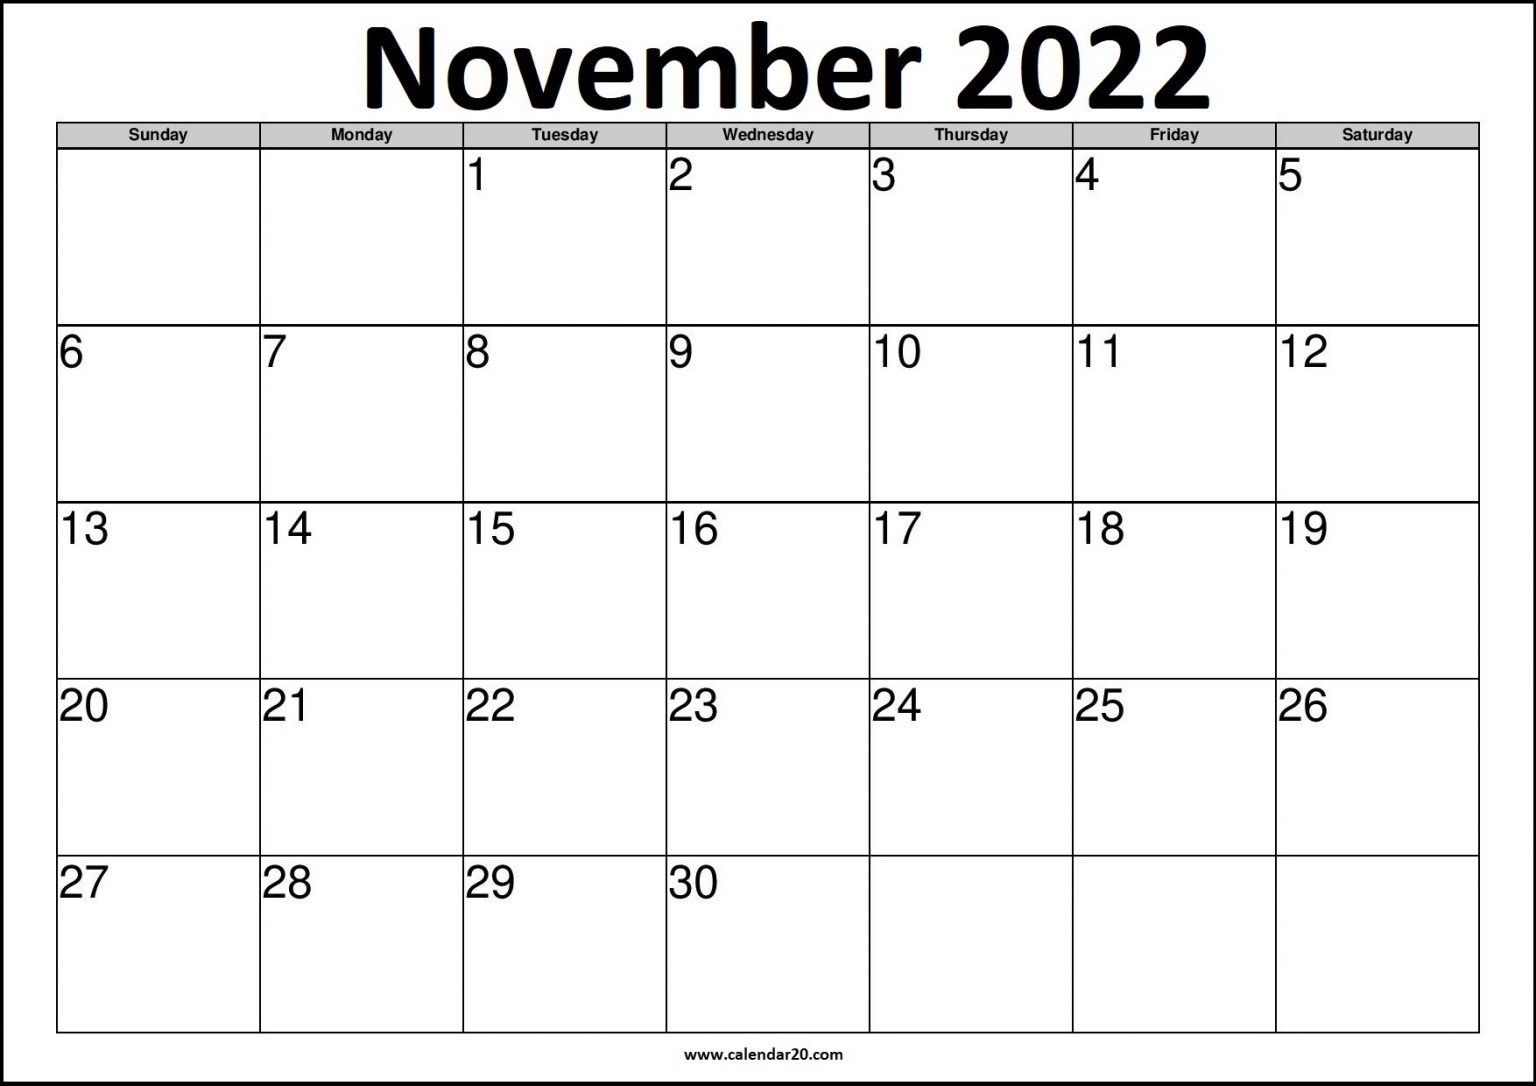 November 2022 US Calendar Printable - Calendar20.com